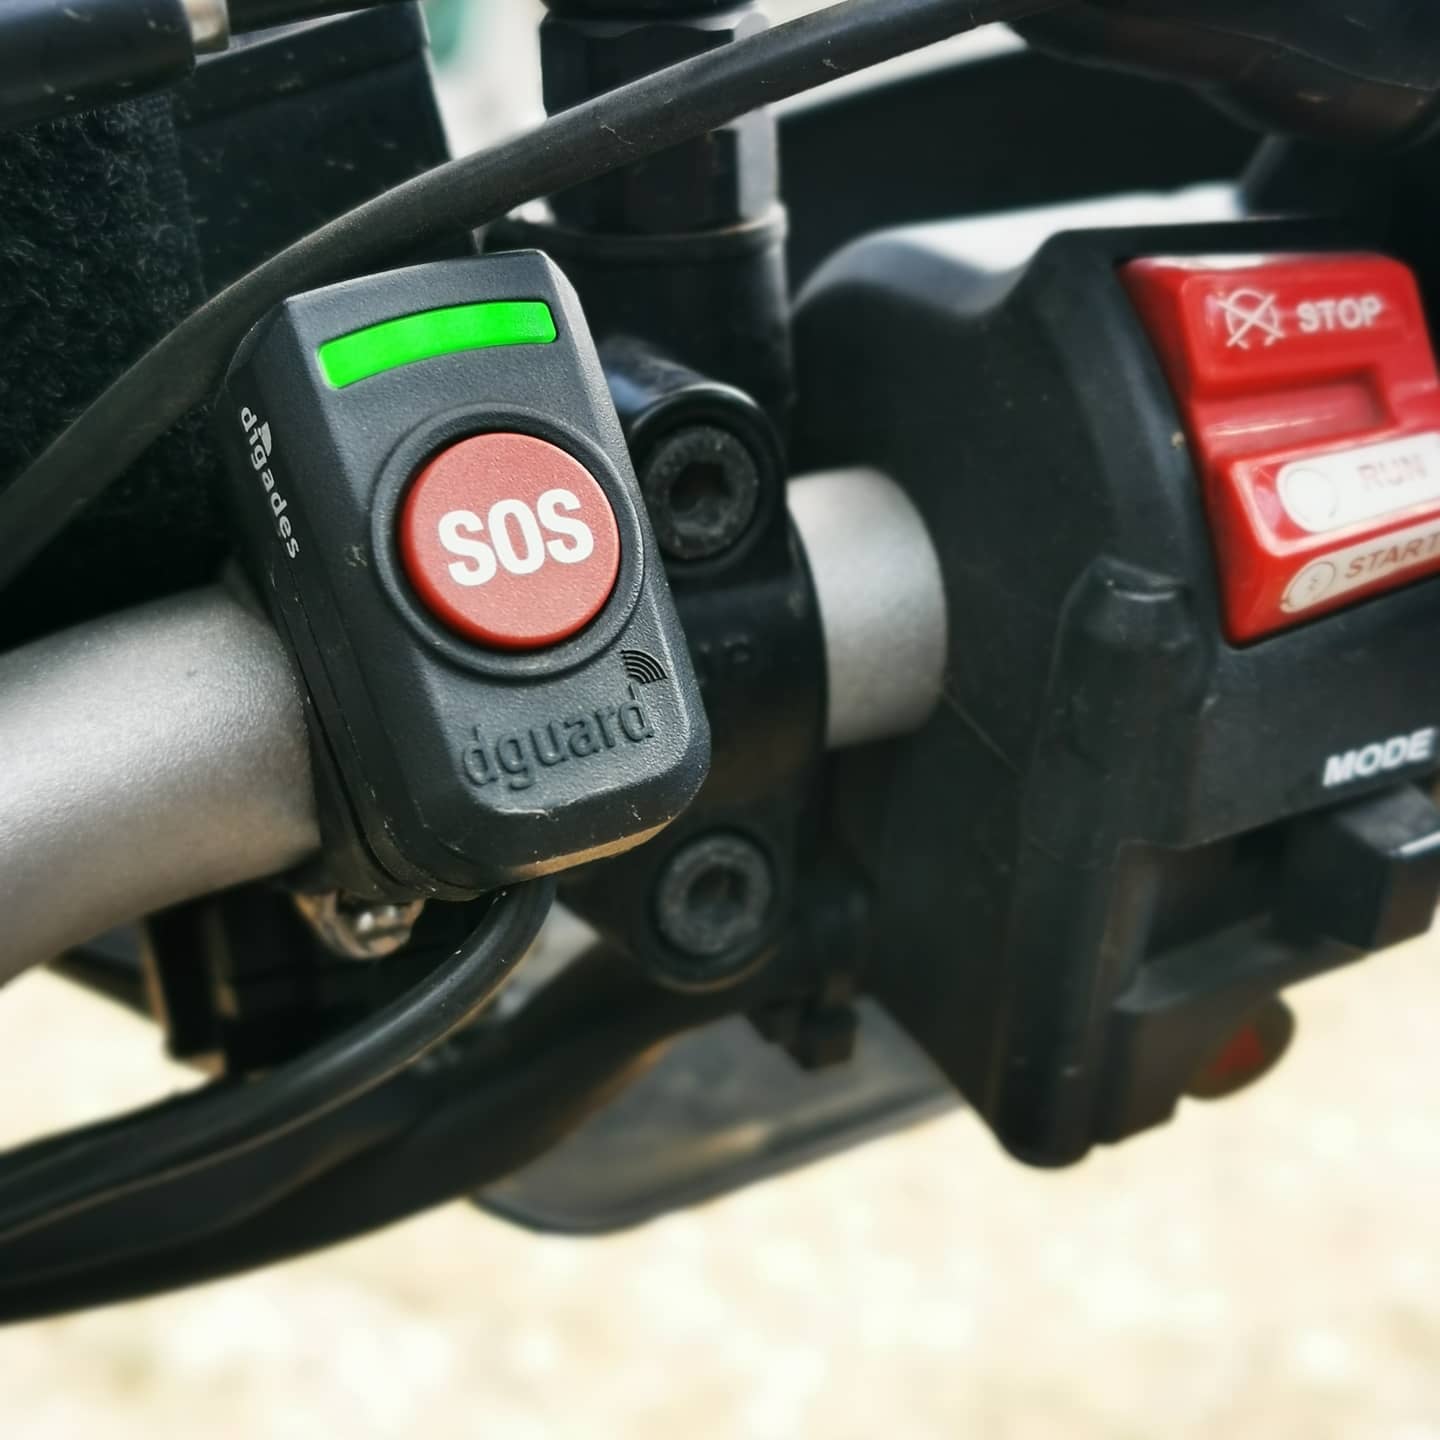 DER SOS-Taster des dguard Notrufsystem wurde bei diesem Motorrad am Lenker befestigt. Es besteht auch die Möglichkeit ihn vorn an der Kanzel zu motieren.